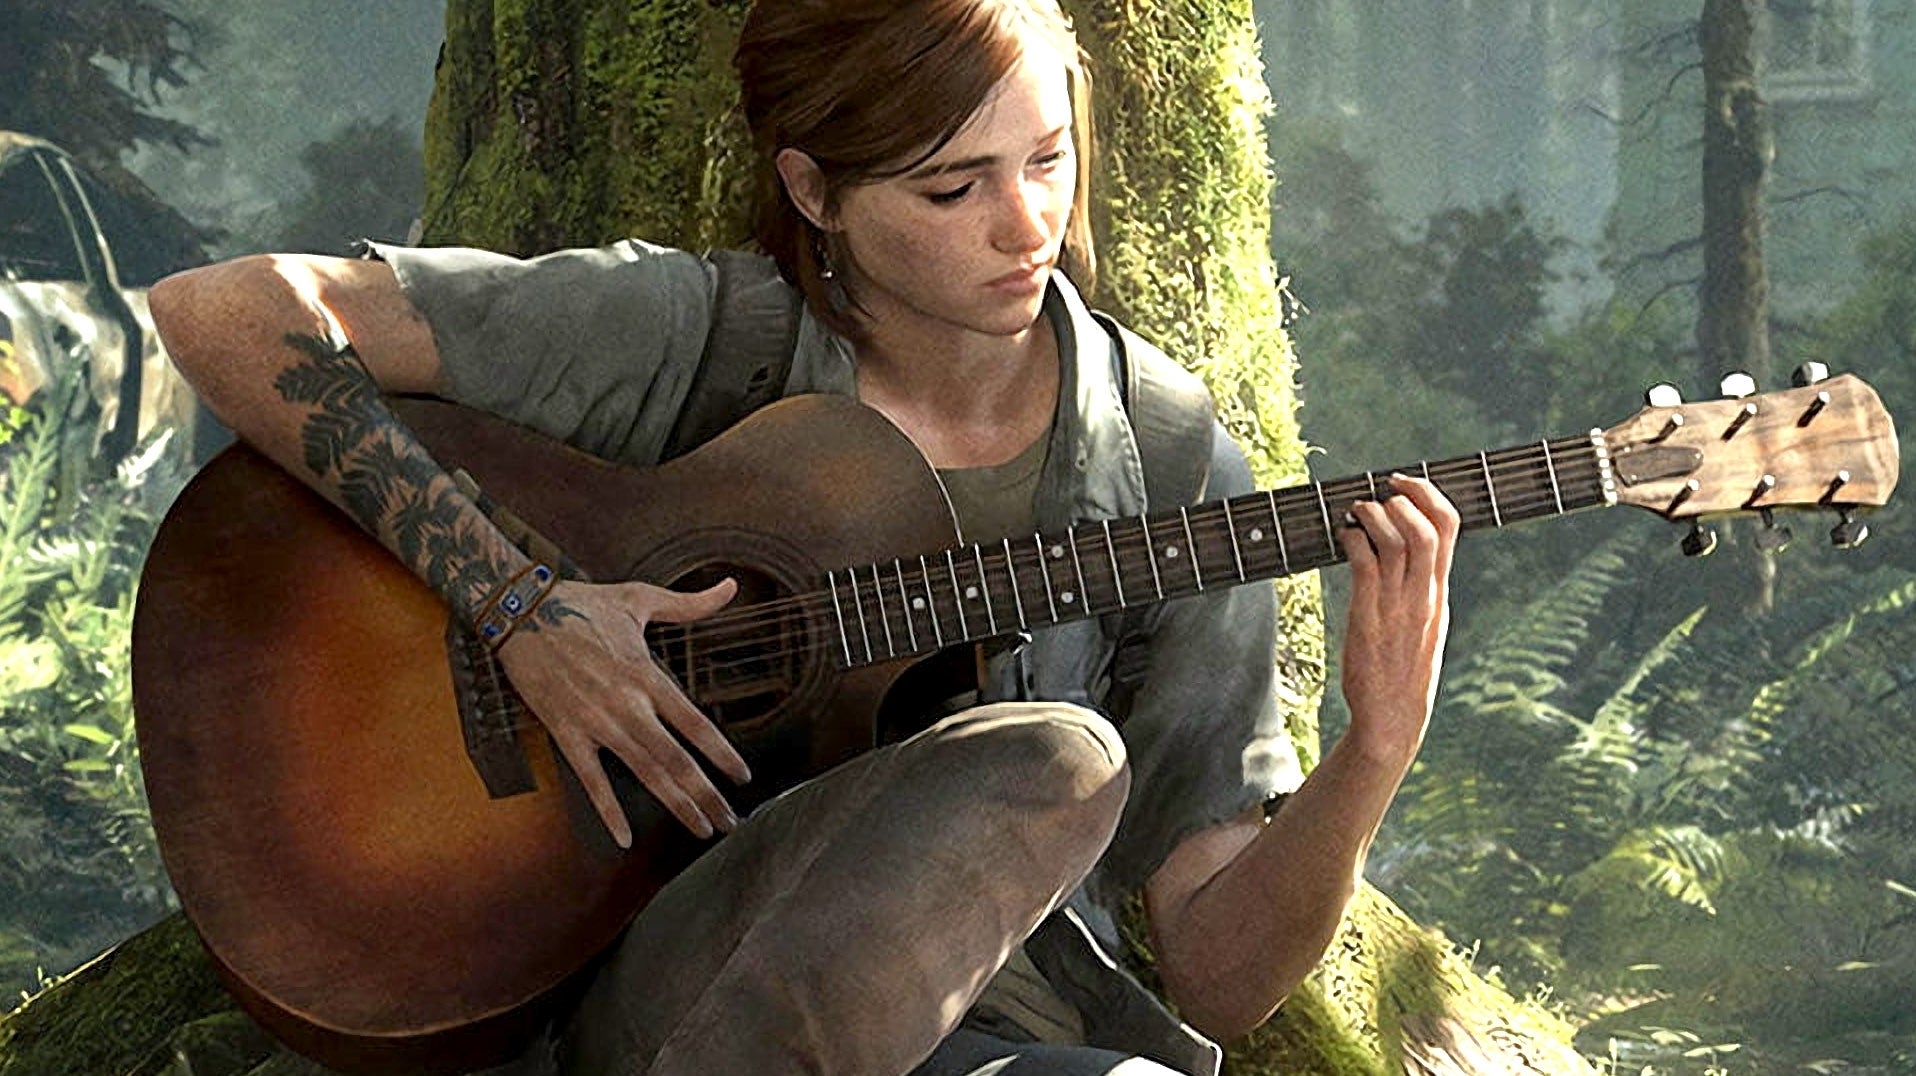 Ellie suona la chitarra nel bosco